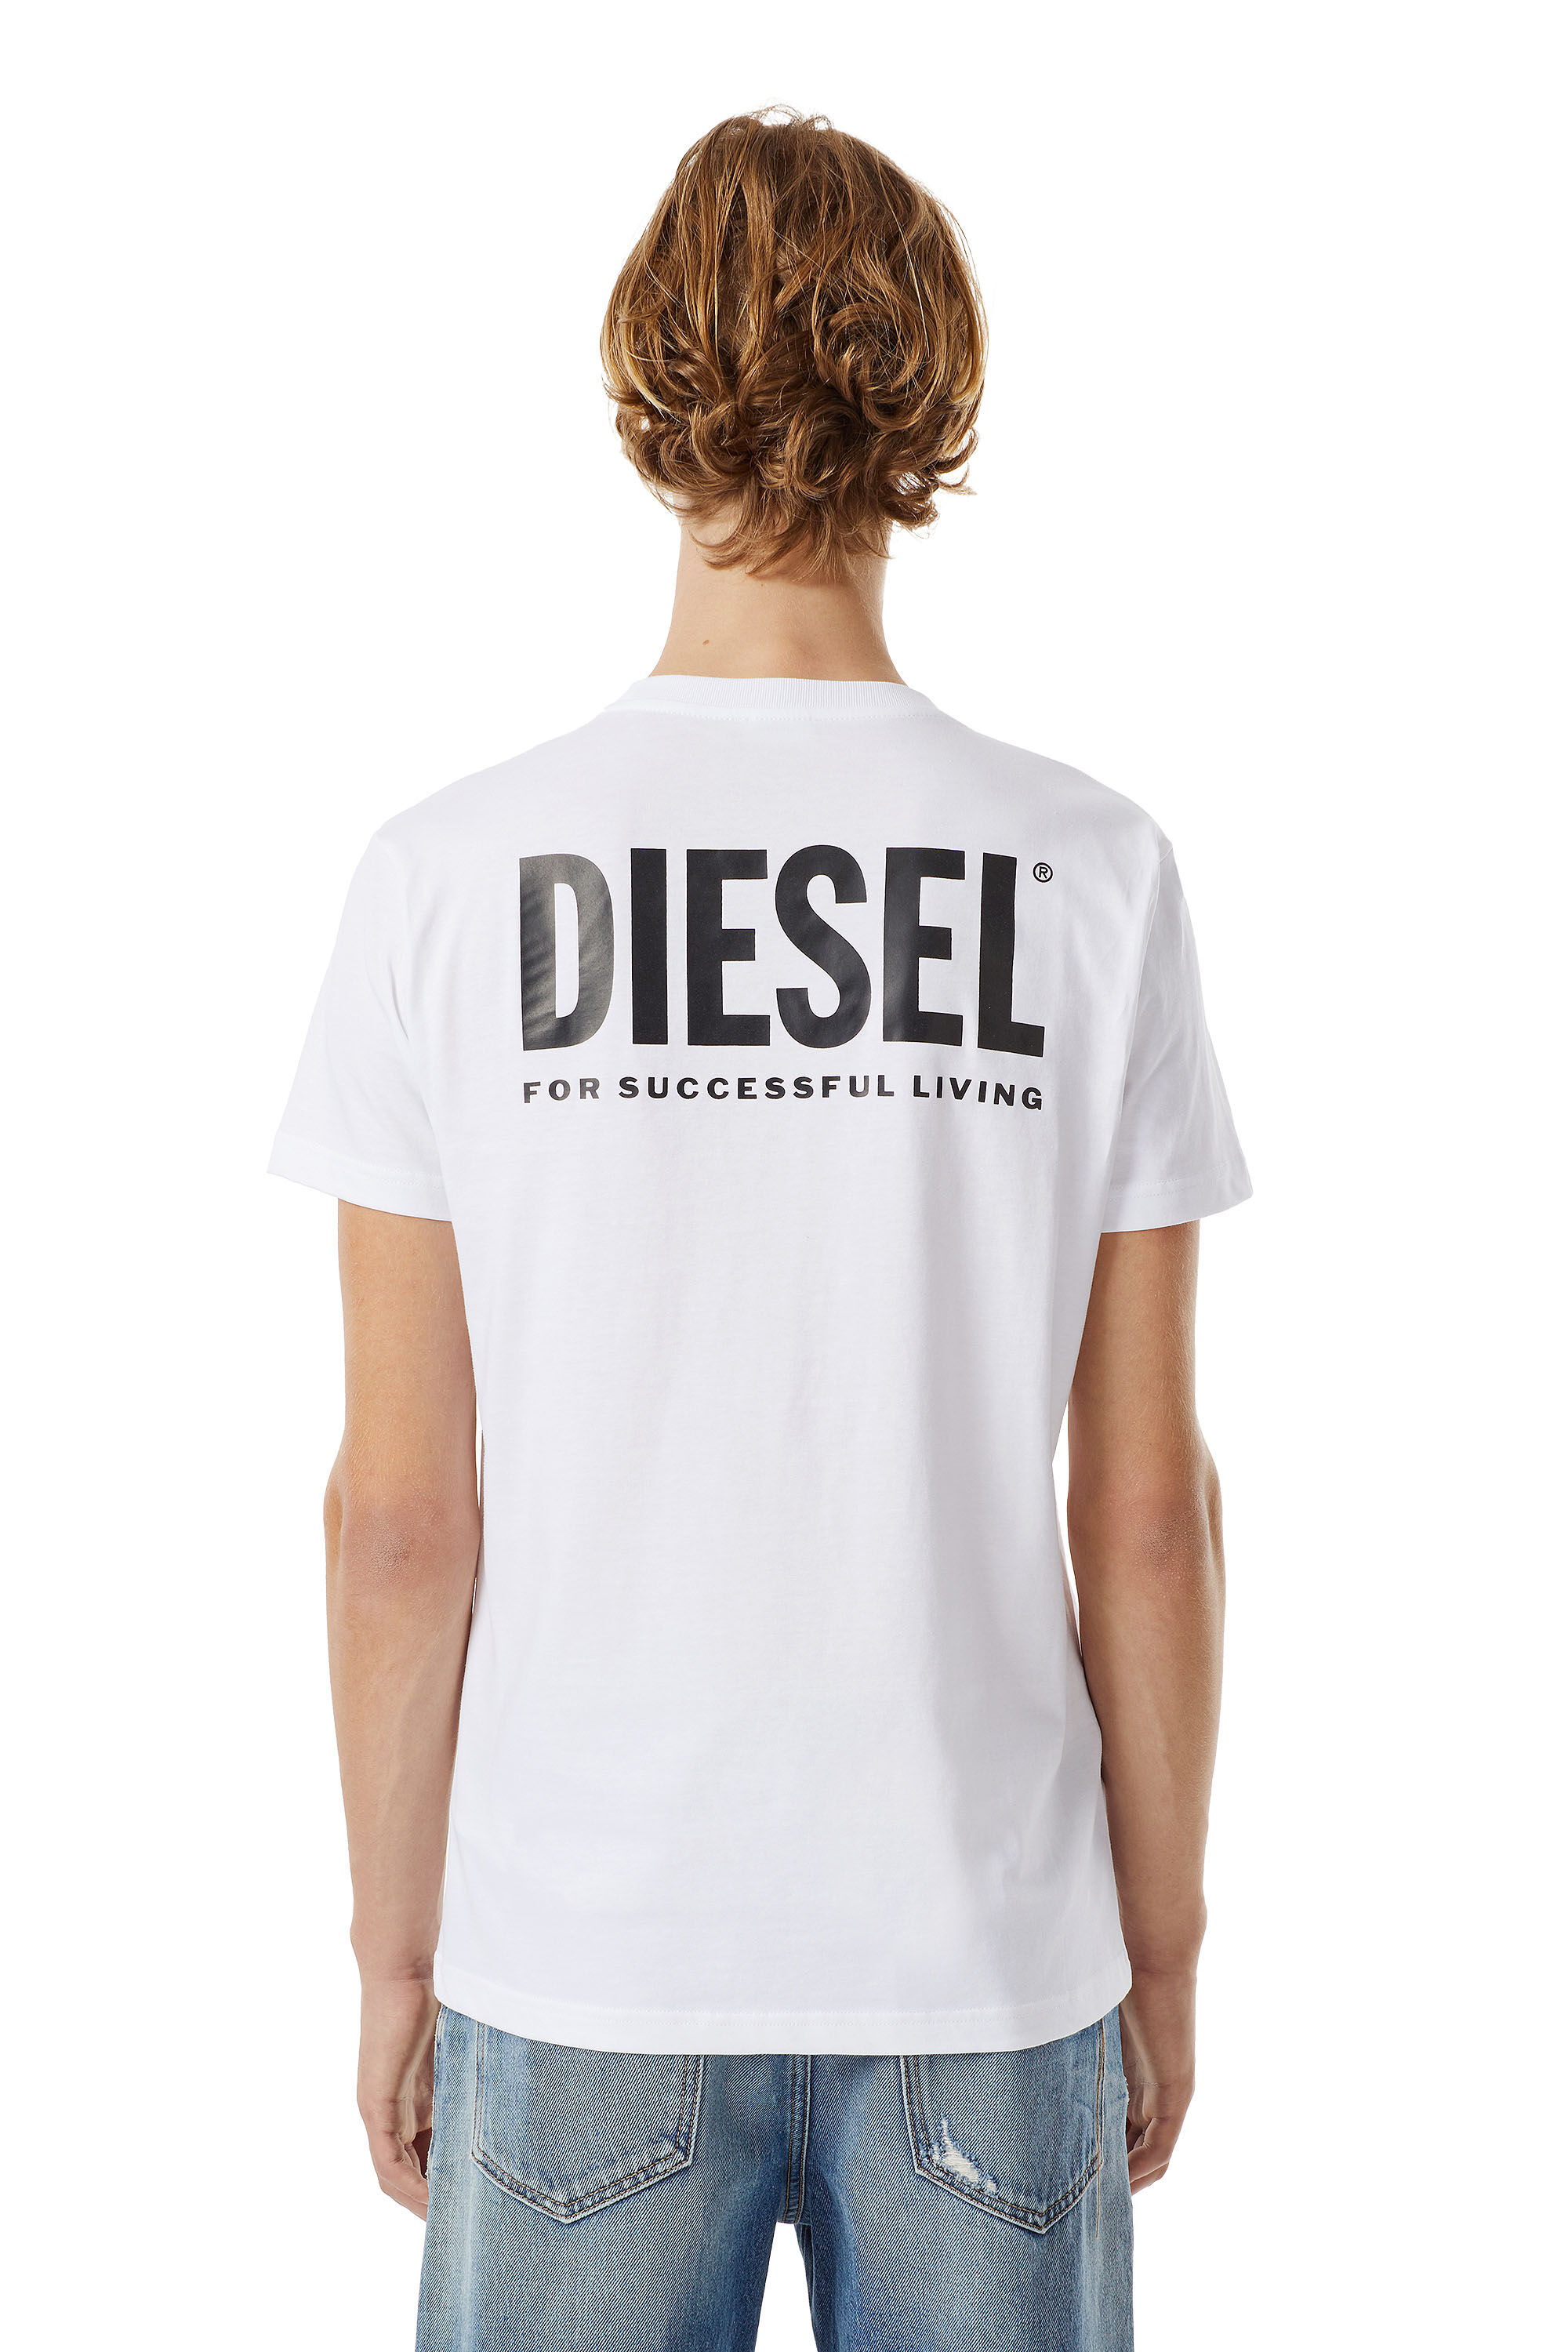 Diesel - LR-T-DIEGO-VIC, Blanc - Image 3